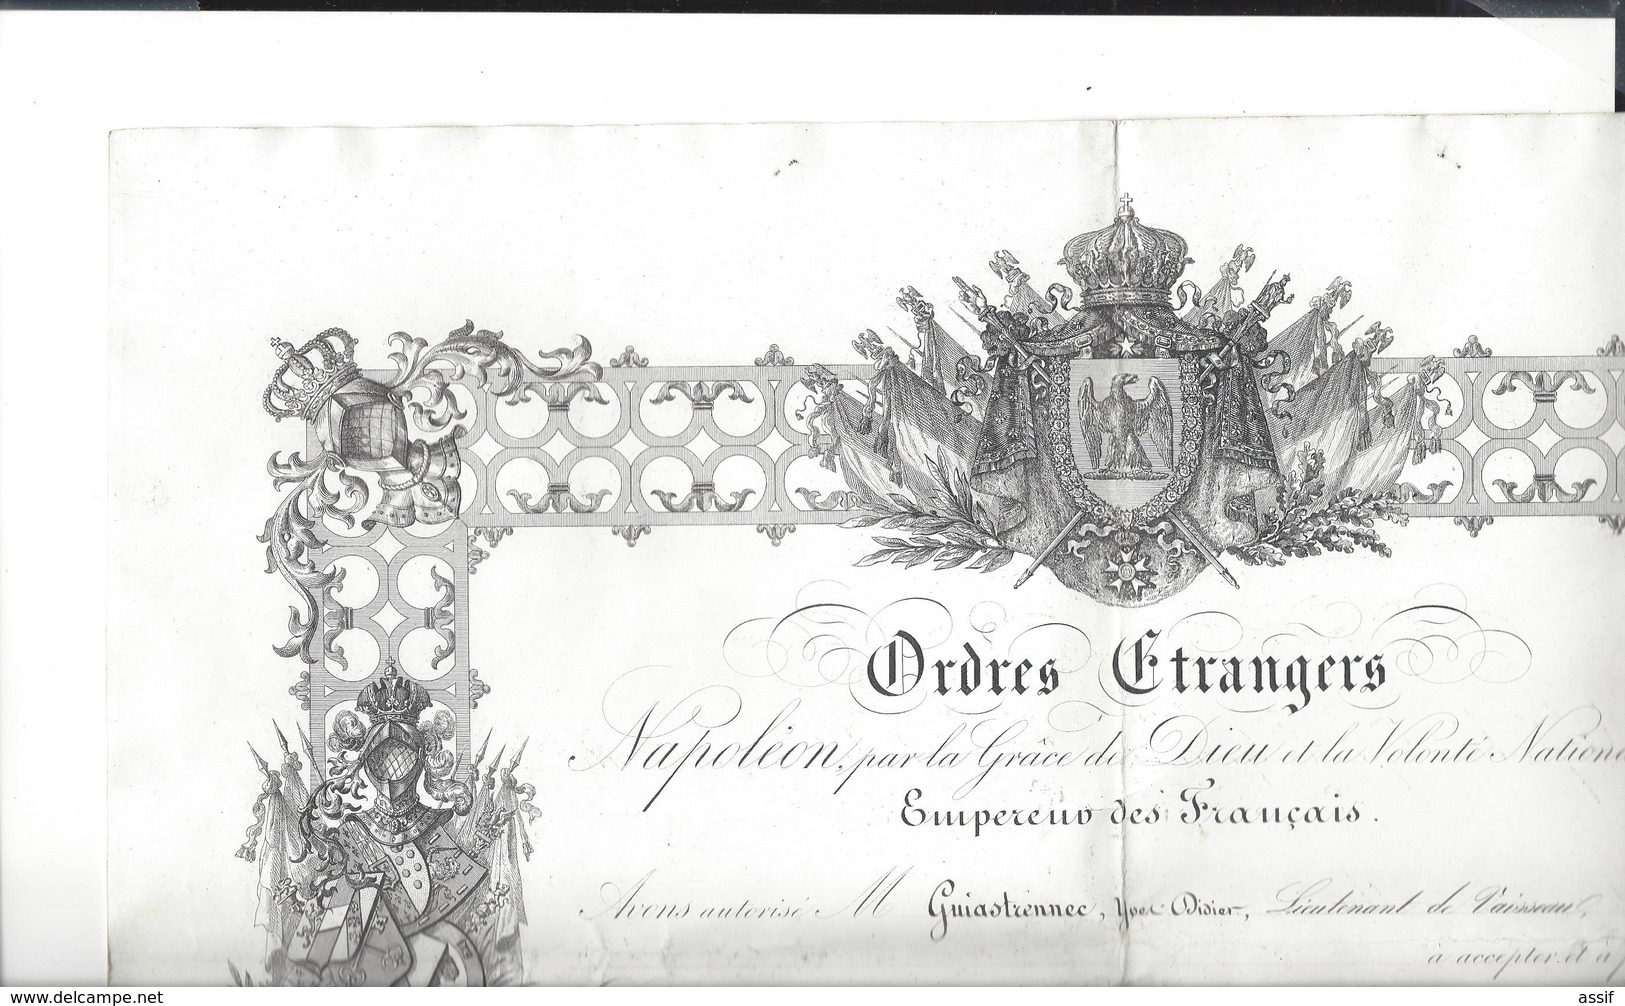 FIRMAN OTTOMAN Medjidié de Turquie 1857 pour Guiastrennec né à Landerneau ( expédition Crimée ) diplôme ordres étrangers